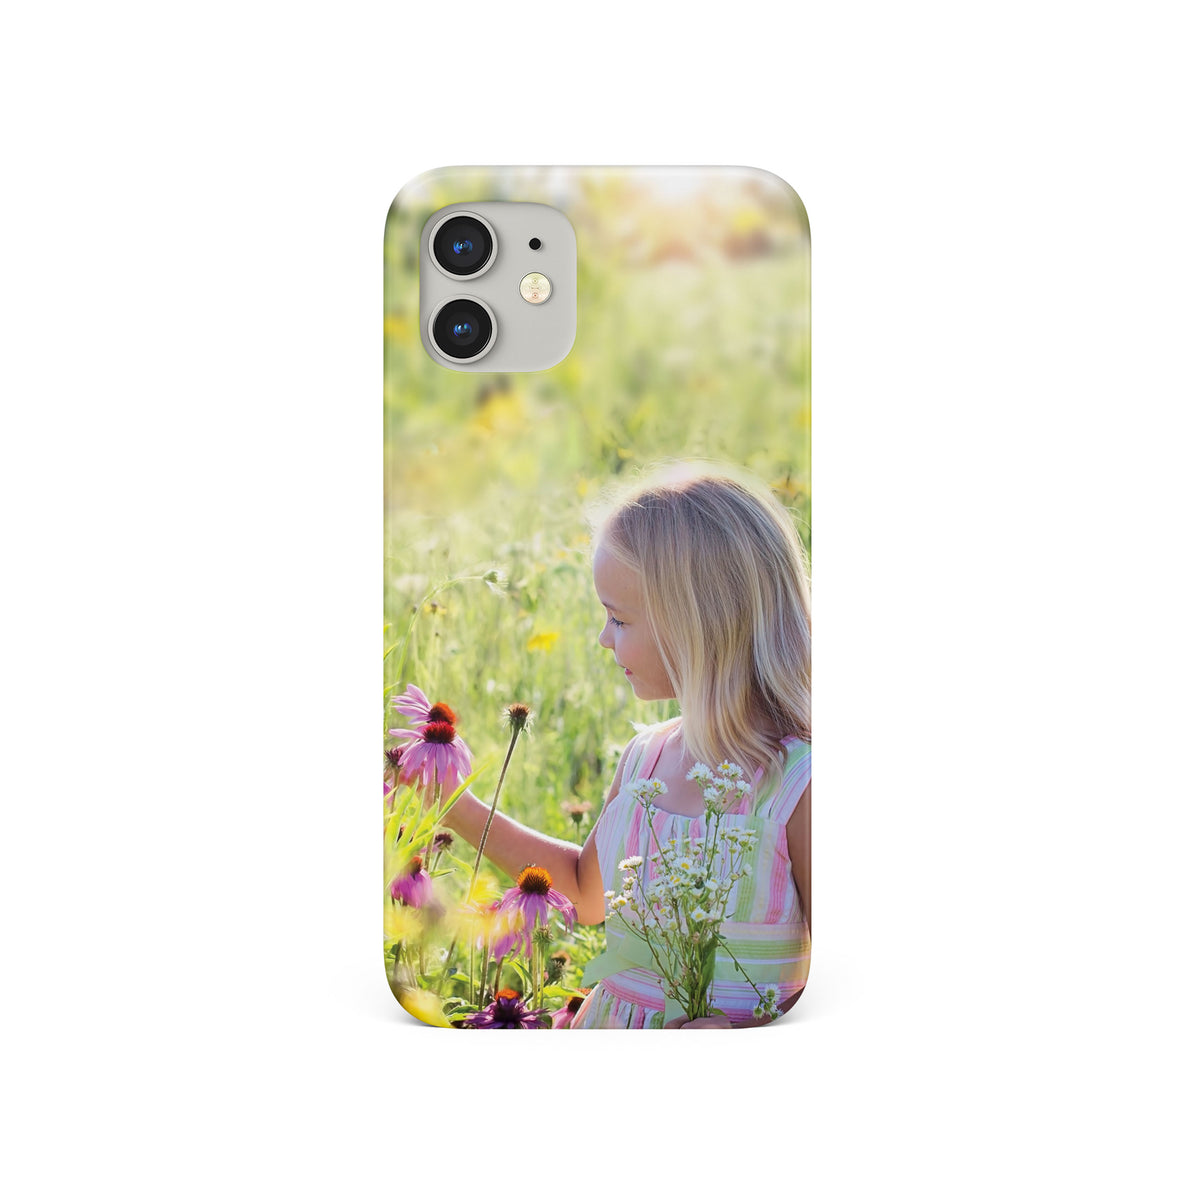 Personalised Custom Photo Hard Phone Case Single Photo